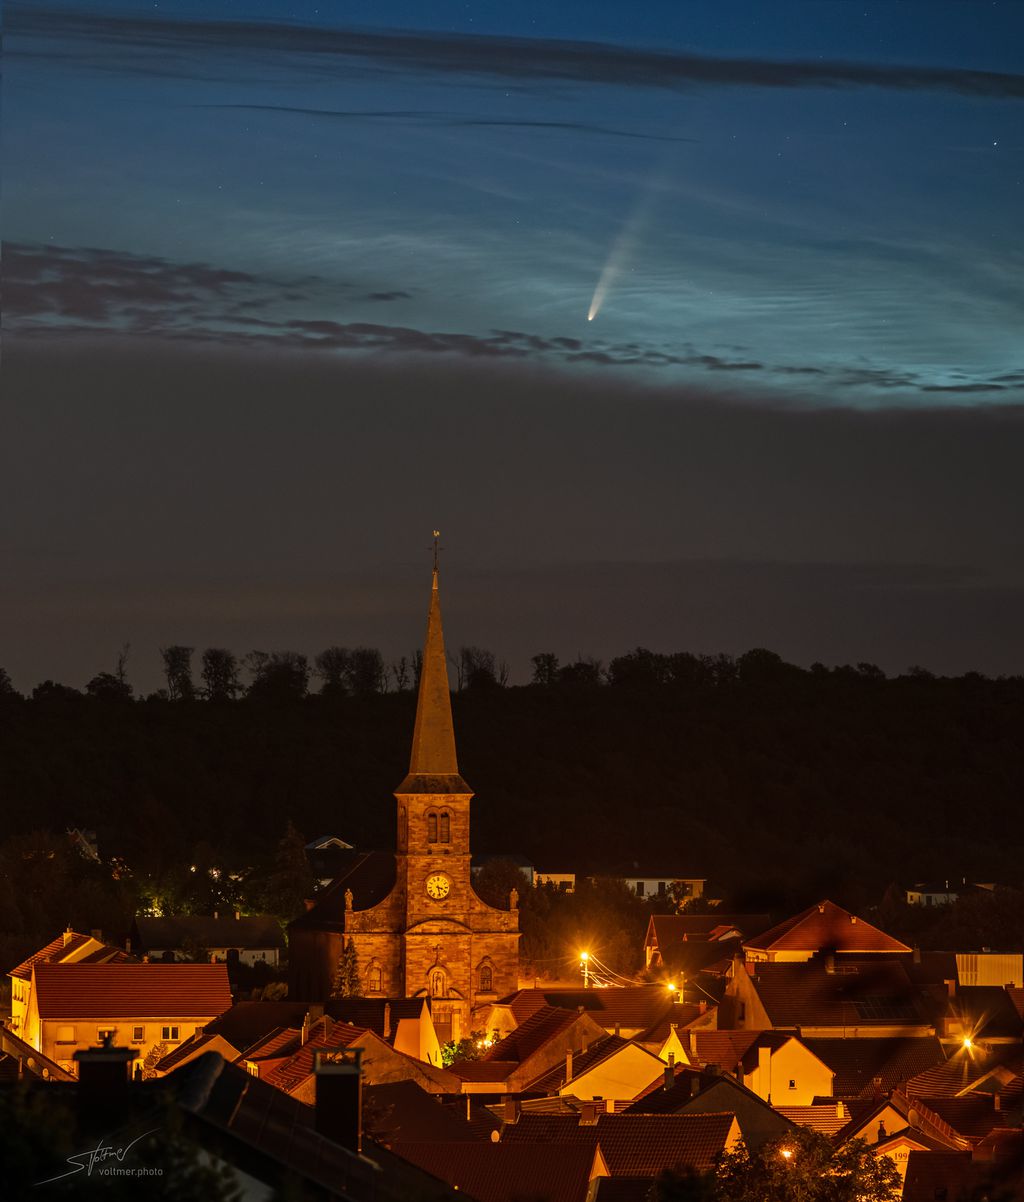 O cometa NEOWISE logo acima da igreja da vila Spicheren, França (Foto: Sebastian Voltmer)